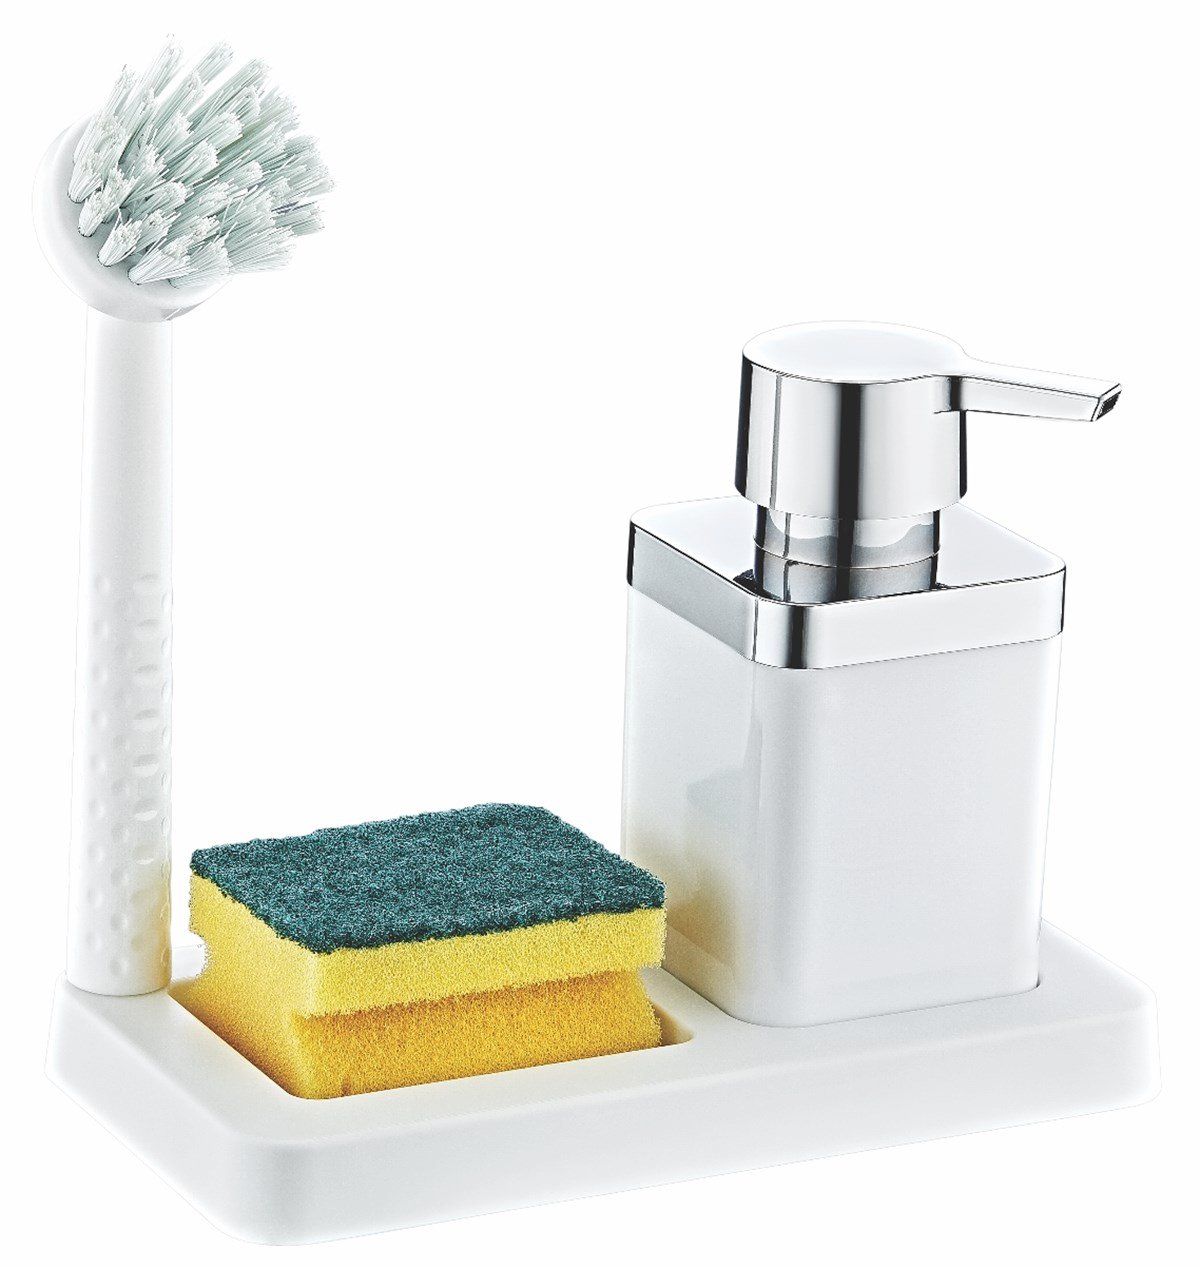 MUYİKA Fırçalı Sıvı Sabunluk Süngerlik Standlı Mutfak Banyo Seti MTFK-01  Fiyatları ve Daha Birçok Dekoratif Ürün | MuyikaDesign